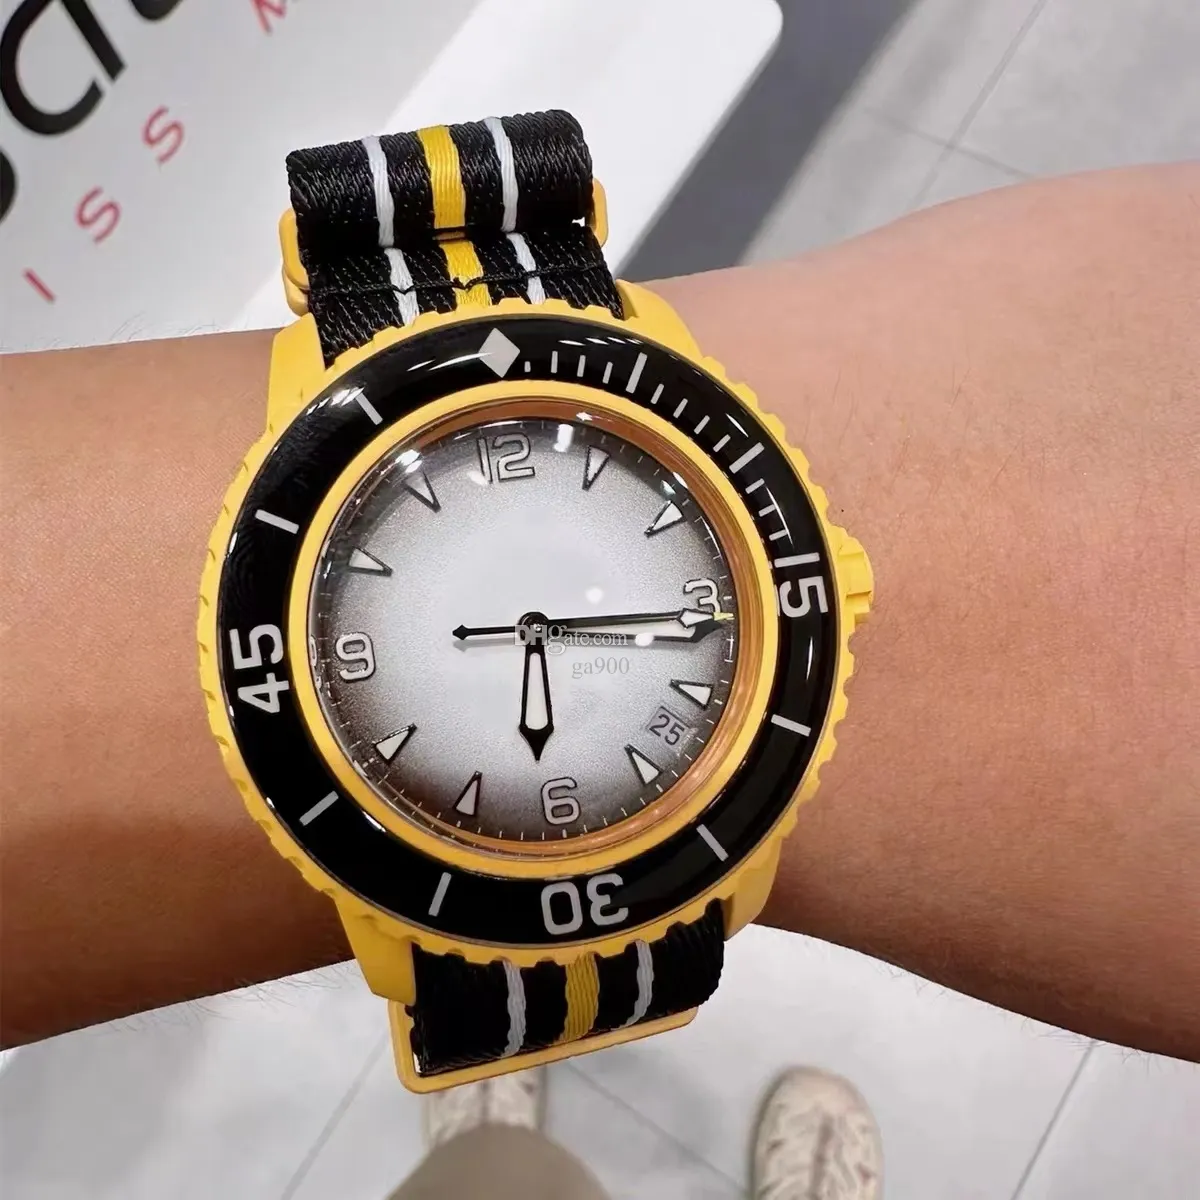 Универсальные спортивные кварцевые часы для мужчин и женщин, серия Five Ocean Co, дисплей с ночной подсветкой, вращающаяся прозрачная задняя крышка, часы Ocean